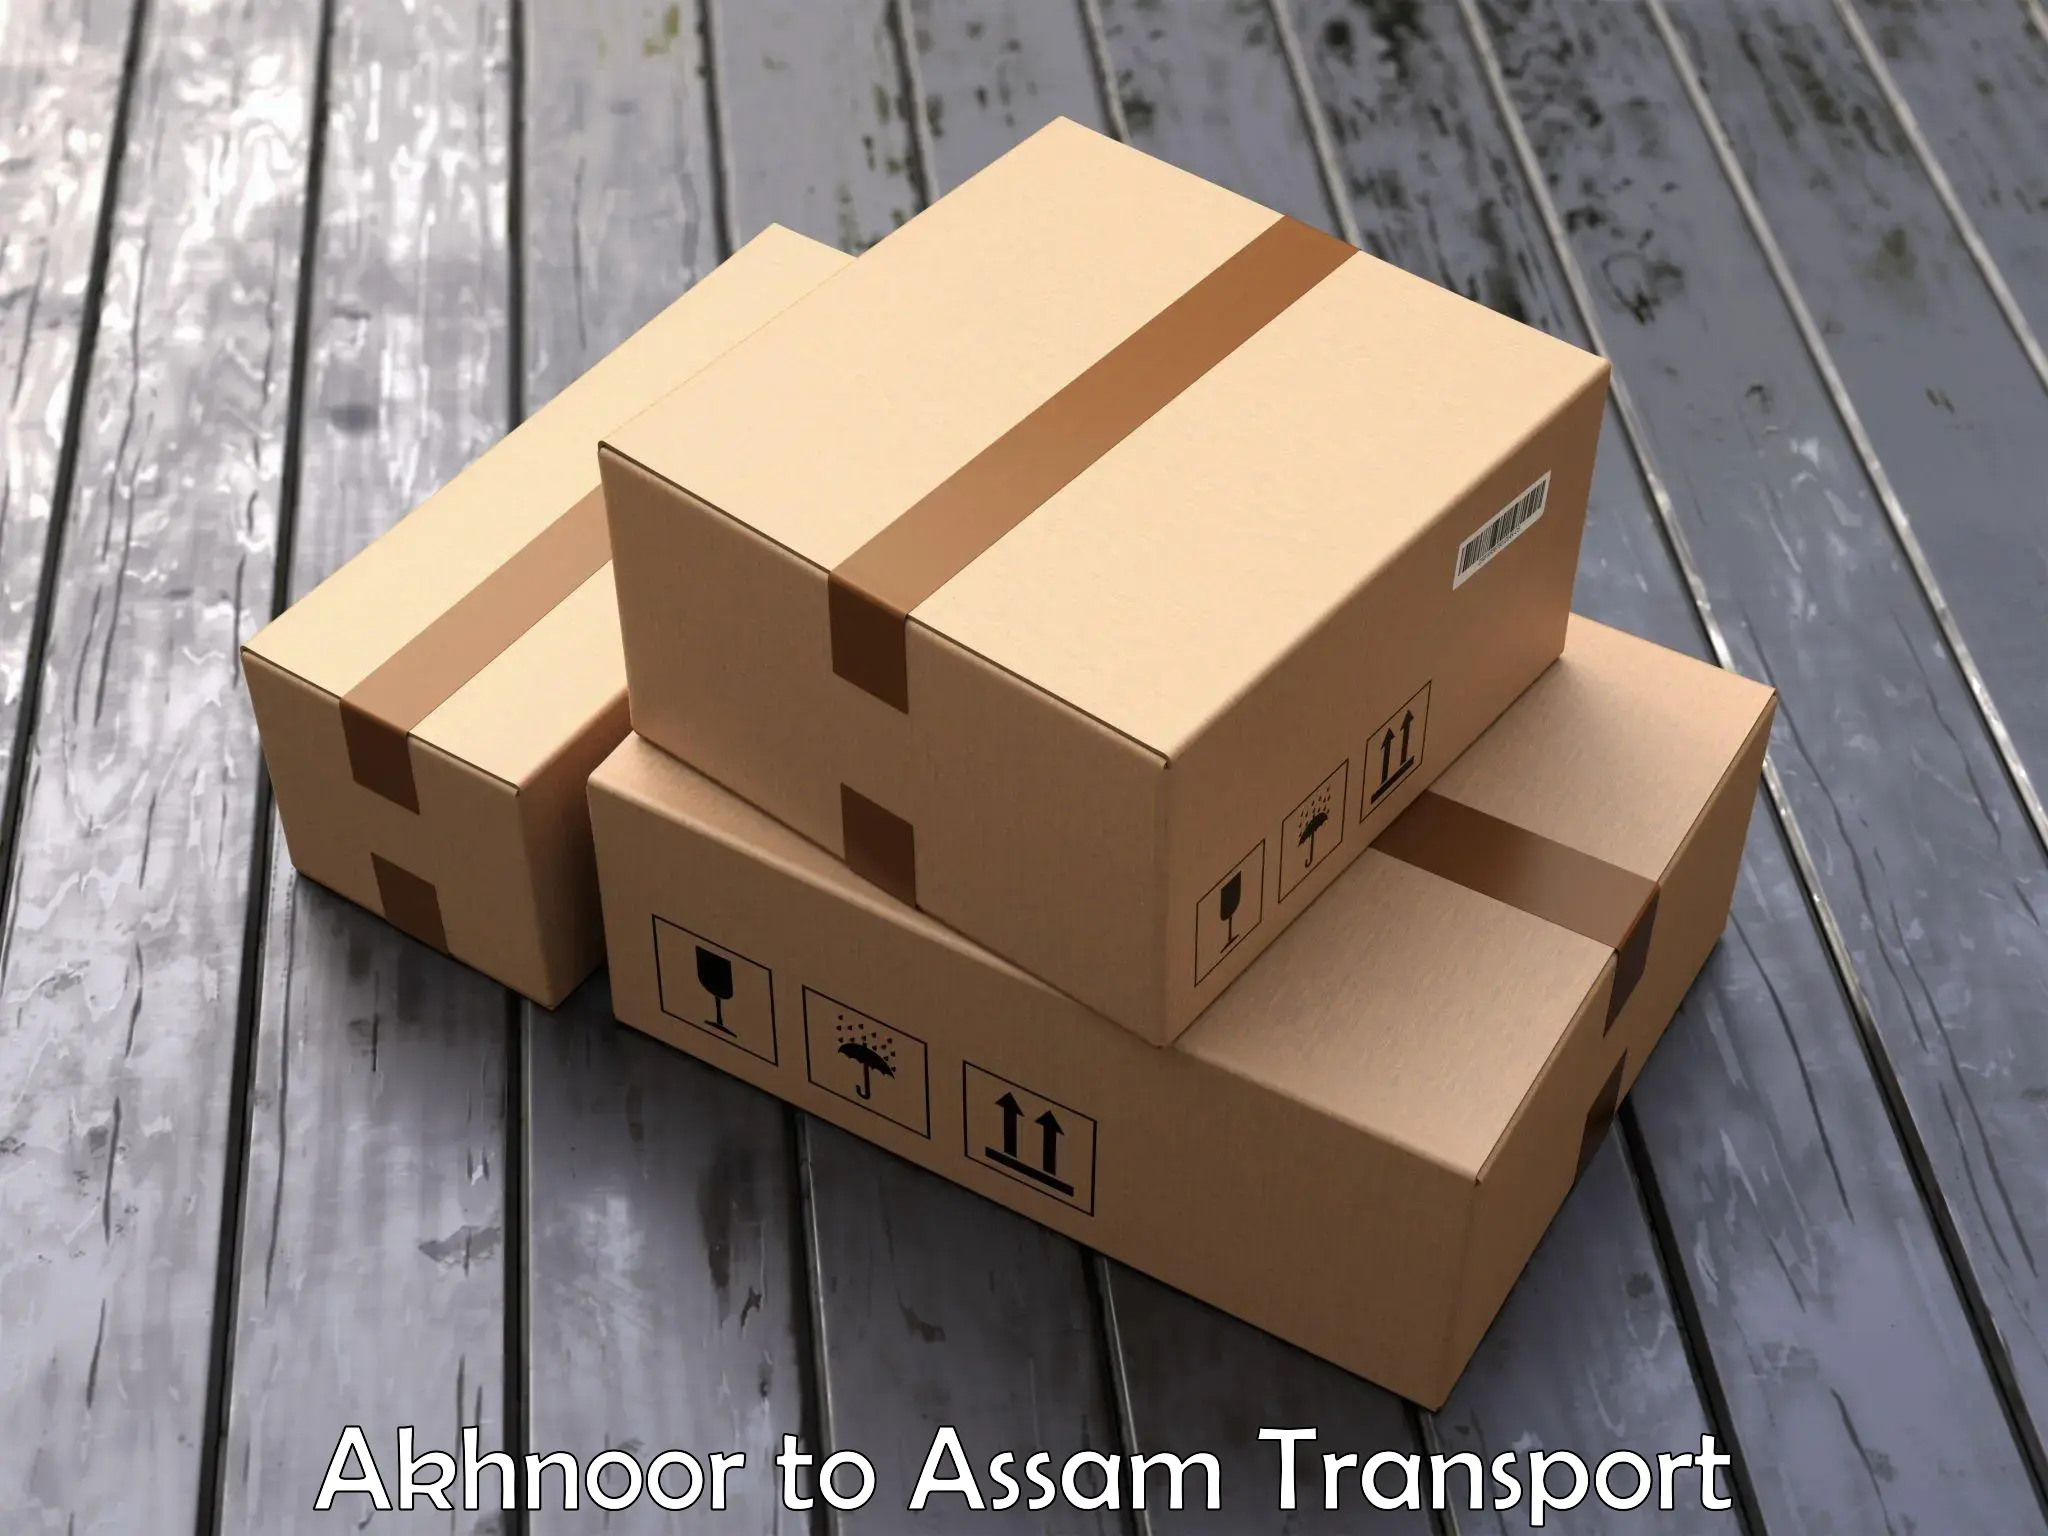 Two wheeler parcel service Akhnoor to Barpeta